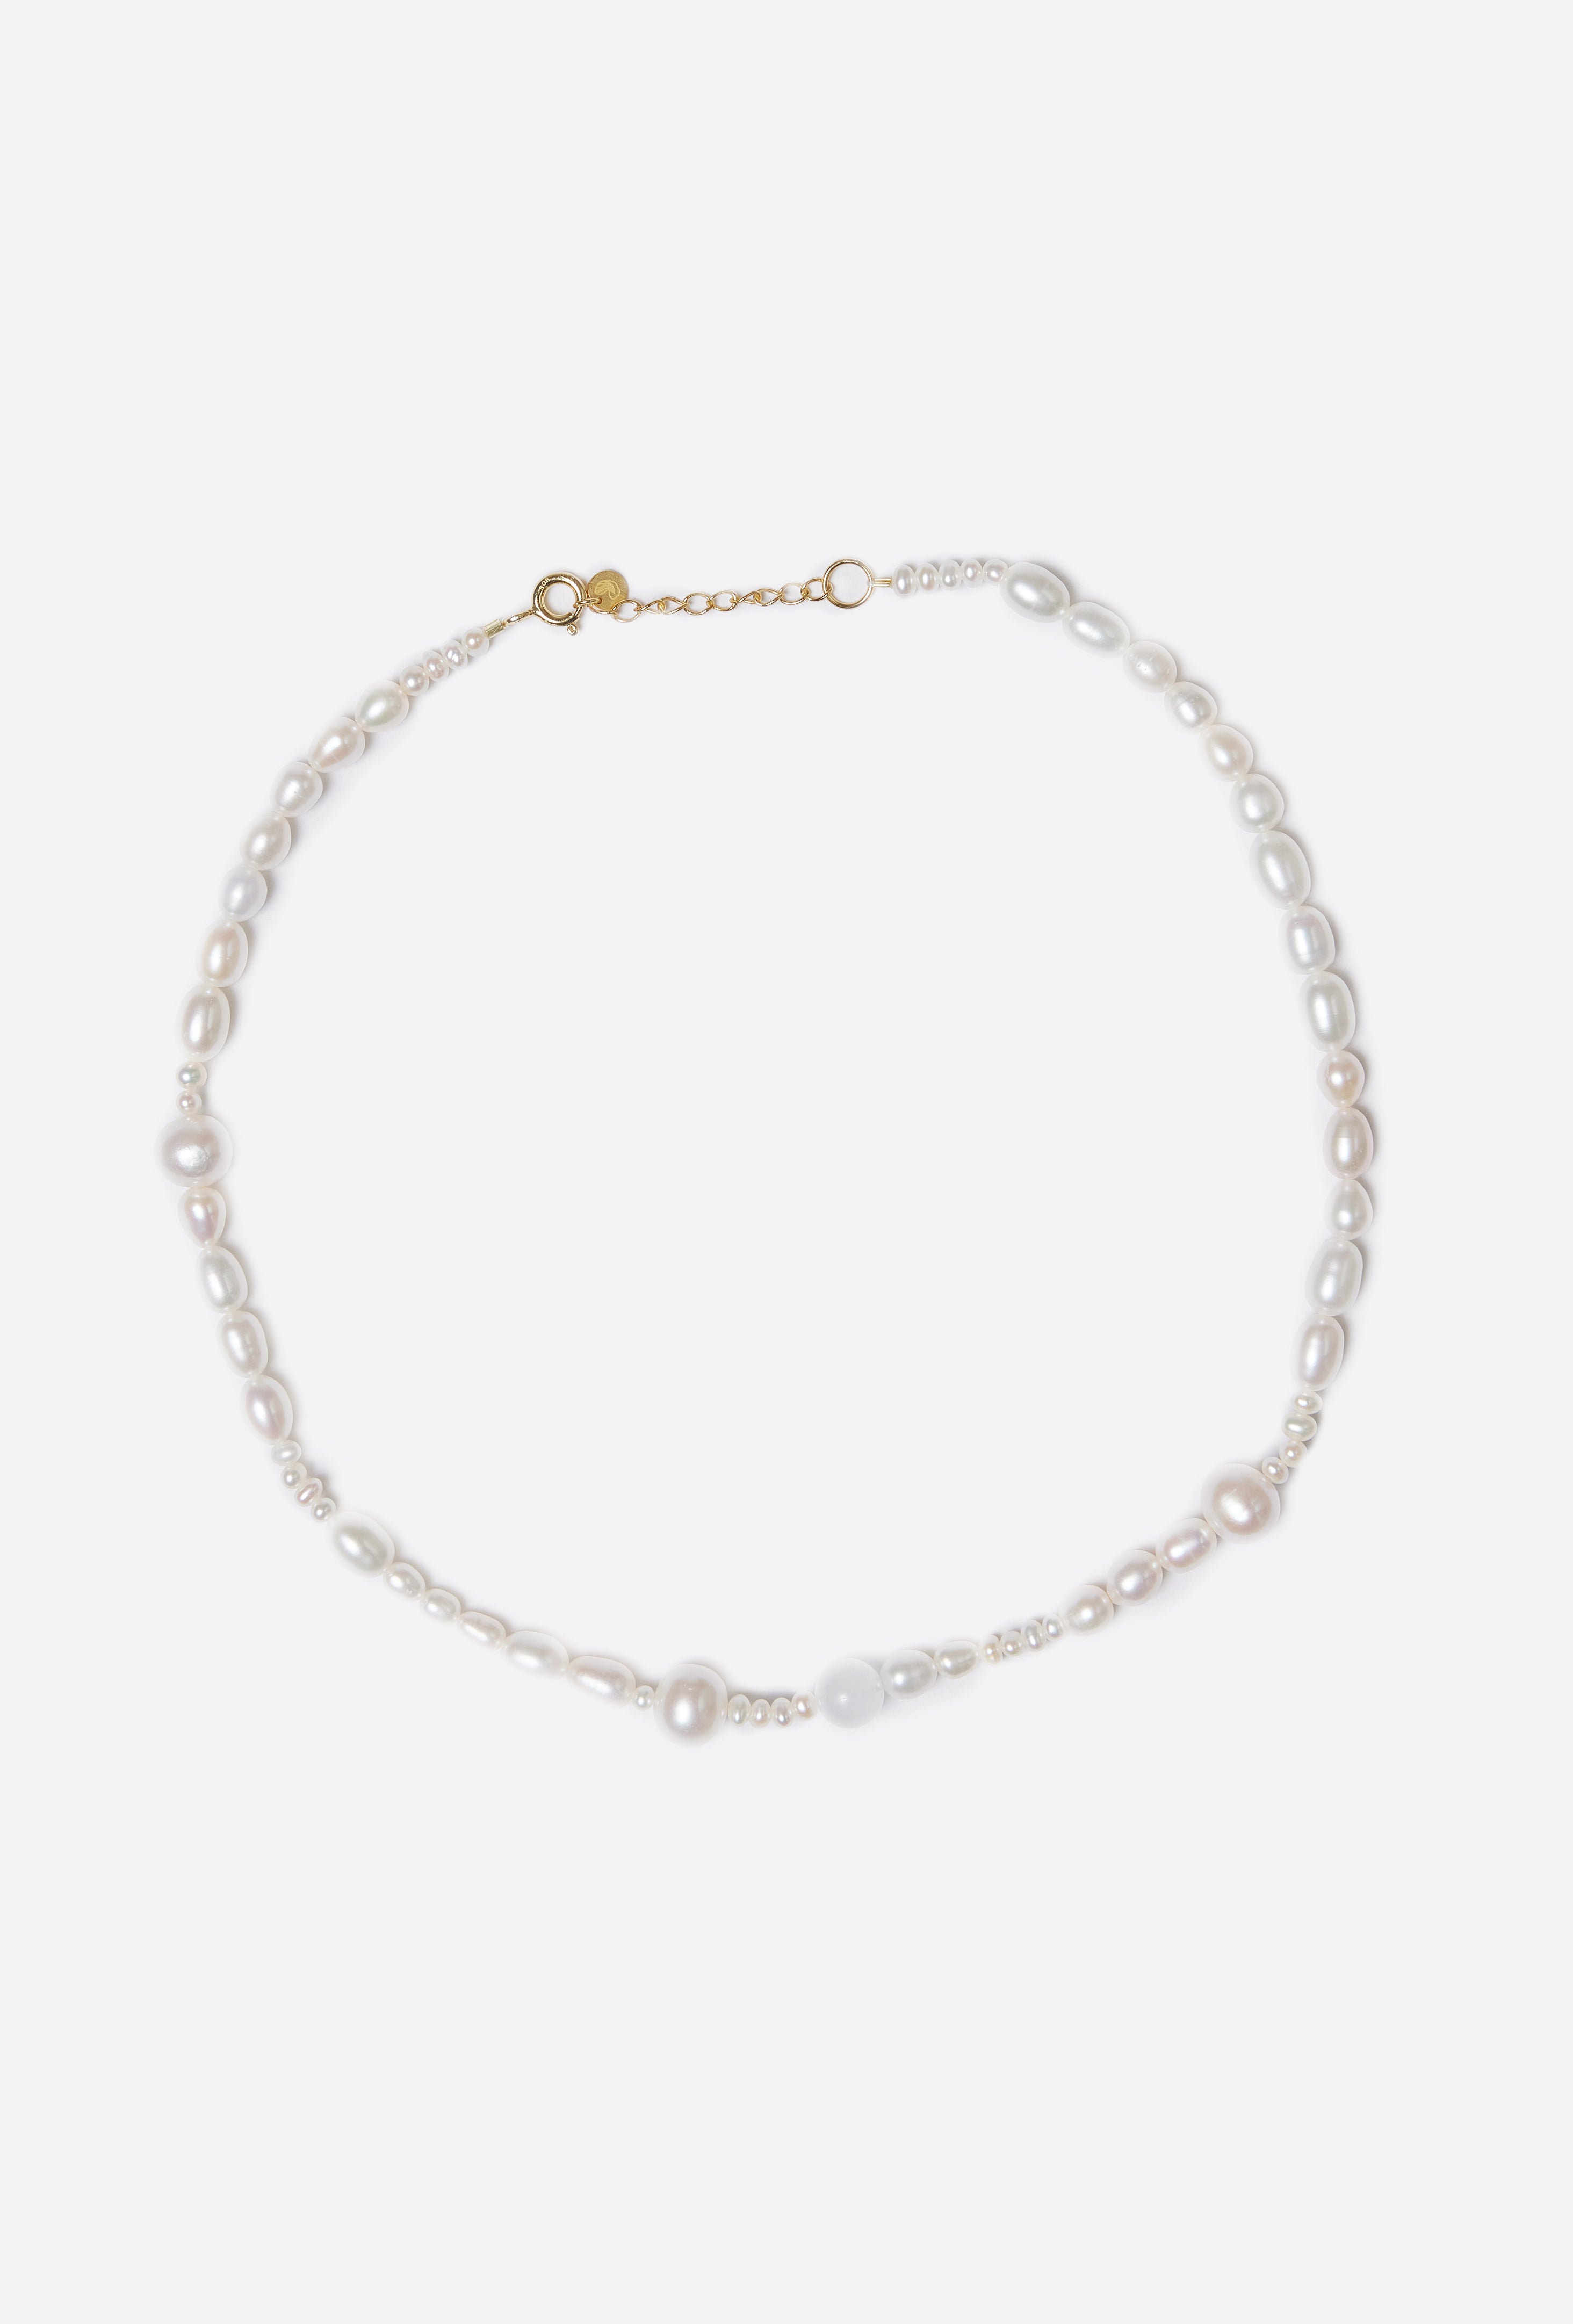 Sorelle | Pure Necklace - Sterling Silver, hvid månesten / 40